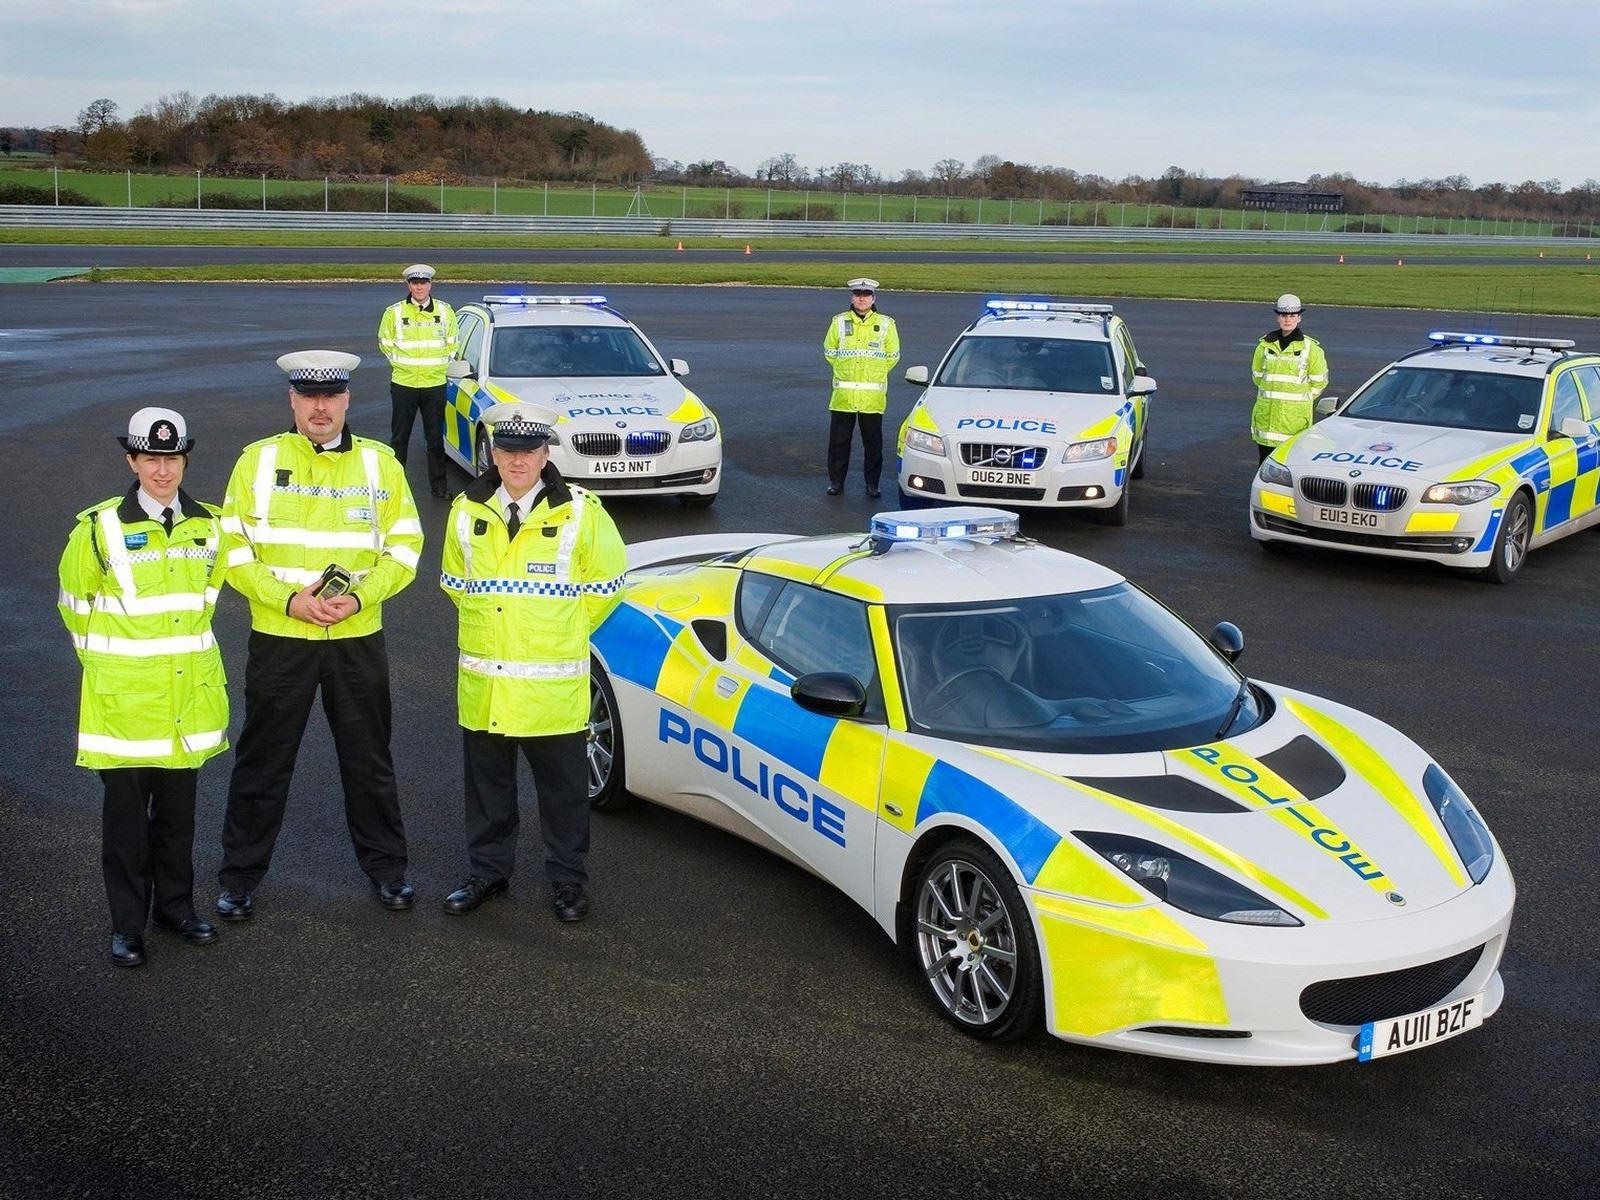 "بالصور" أكثر 10 سيارات شرطة تميزا حول العالم 2